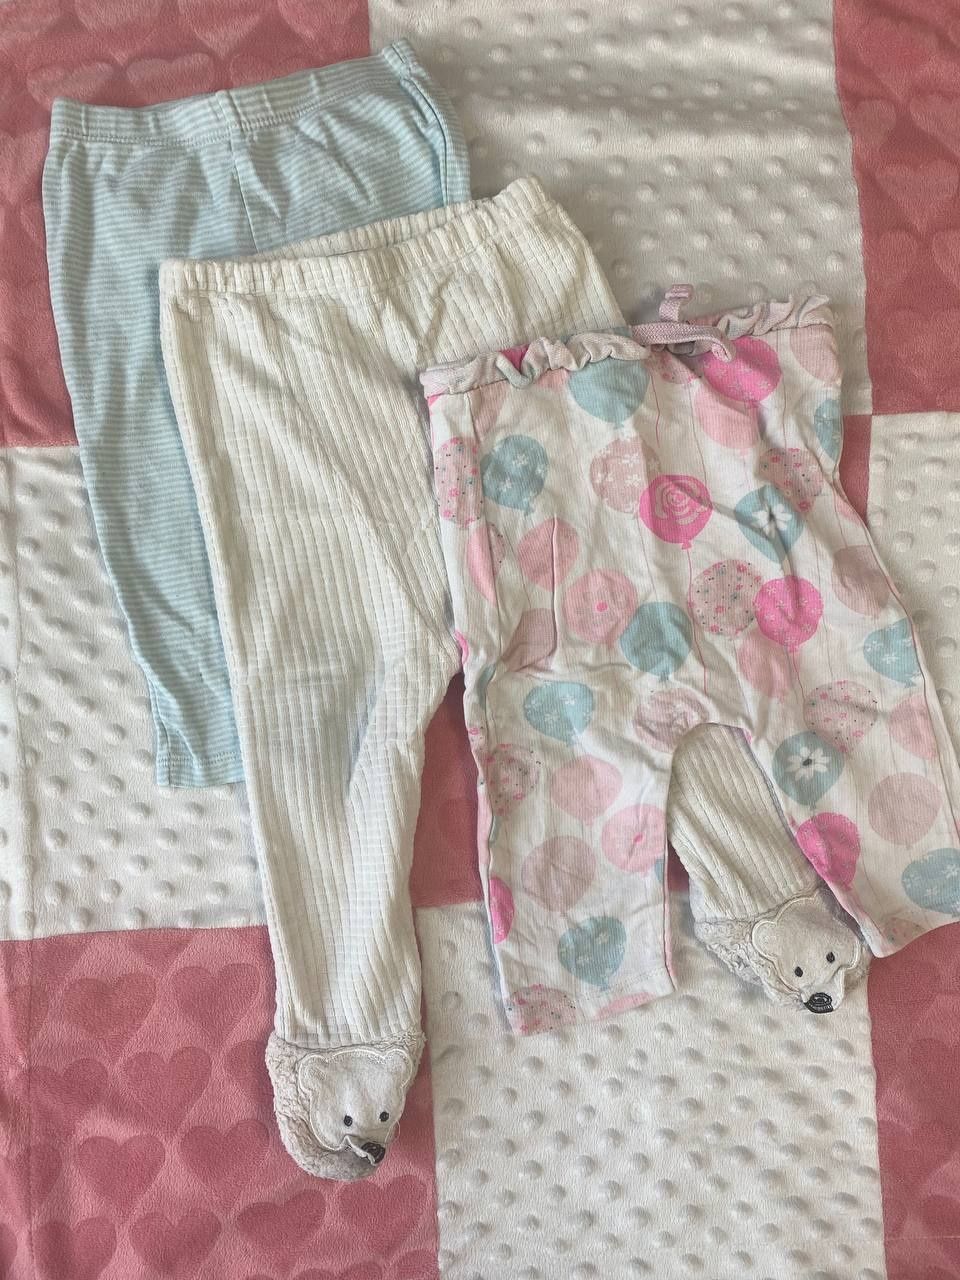 Набор одежды, пакет одежды для девочки от полугода 6-12 месяцев